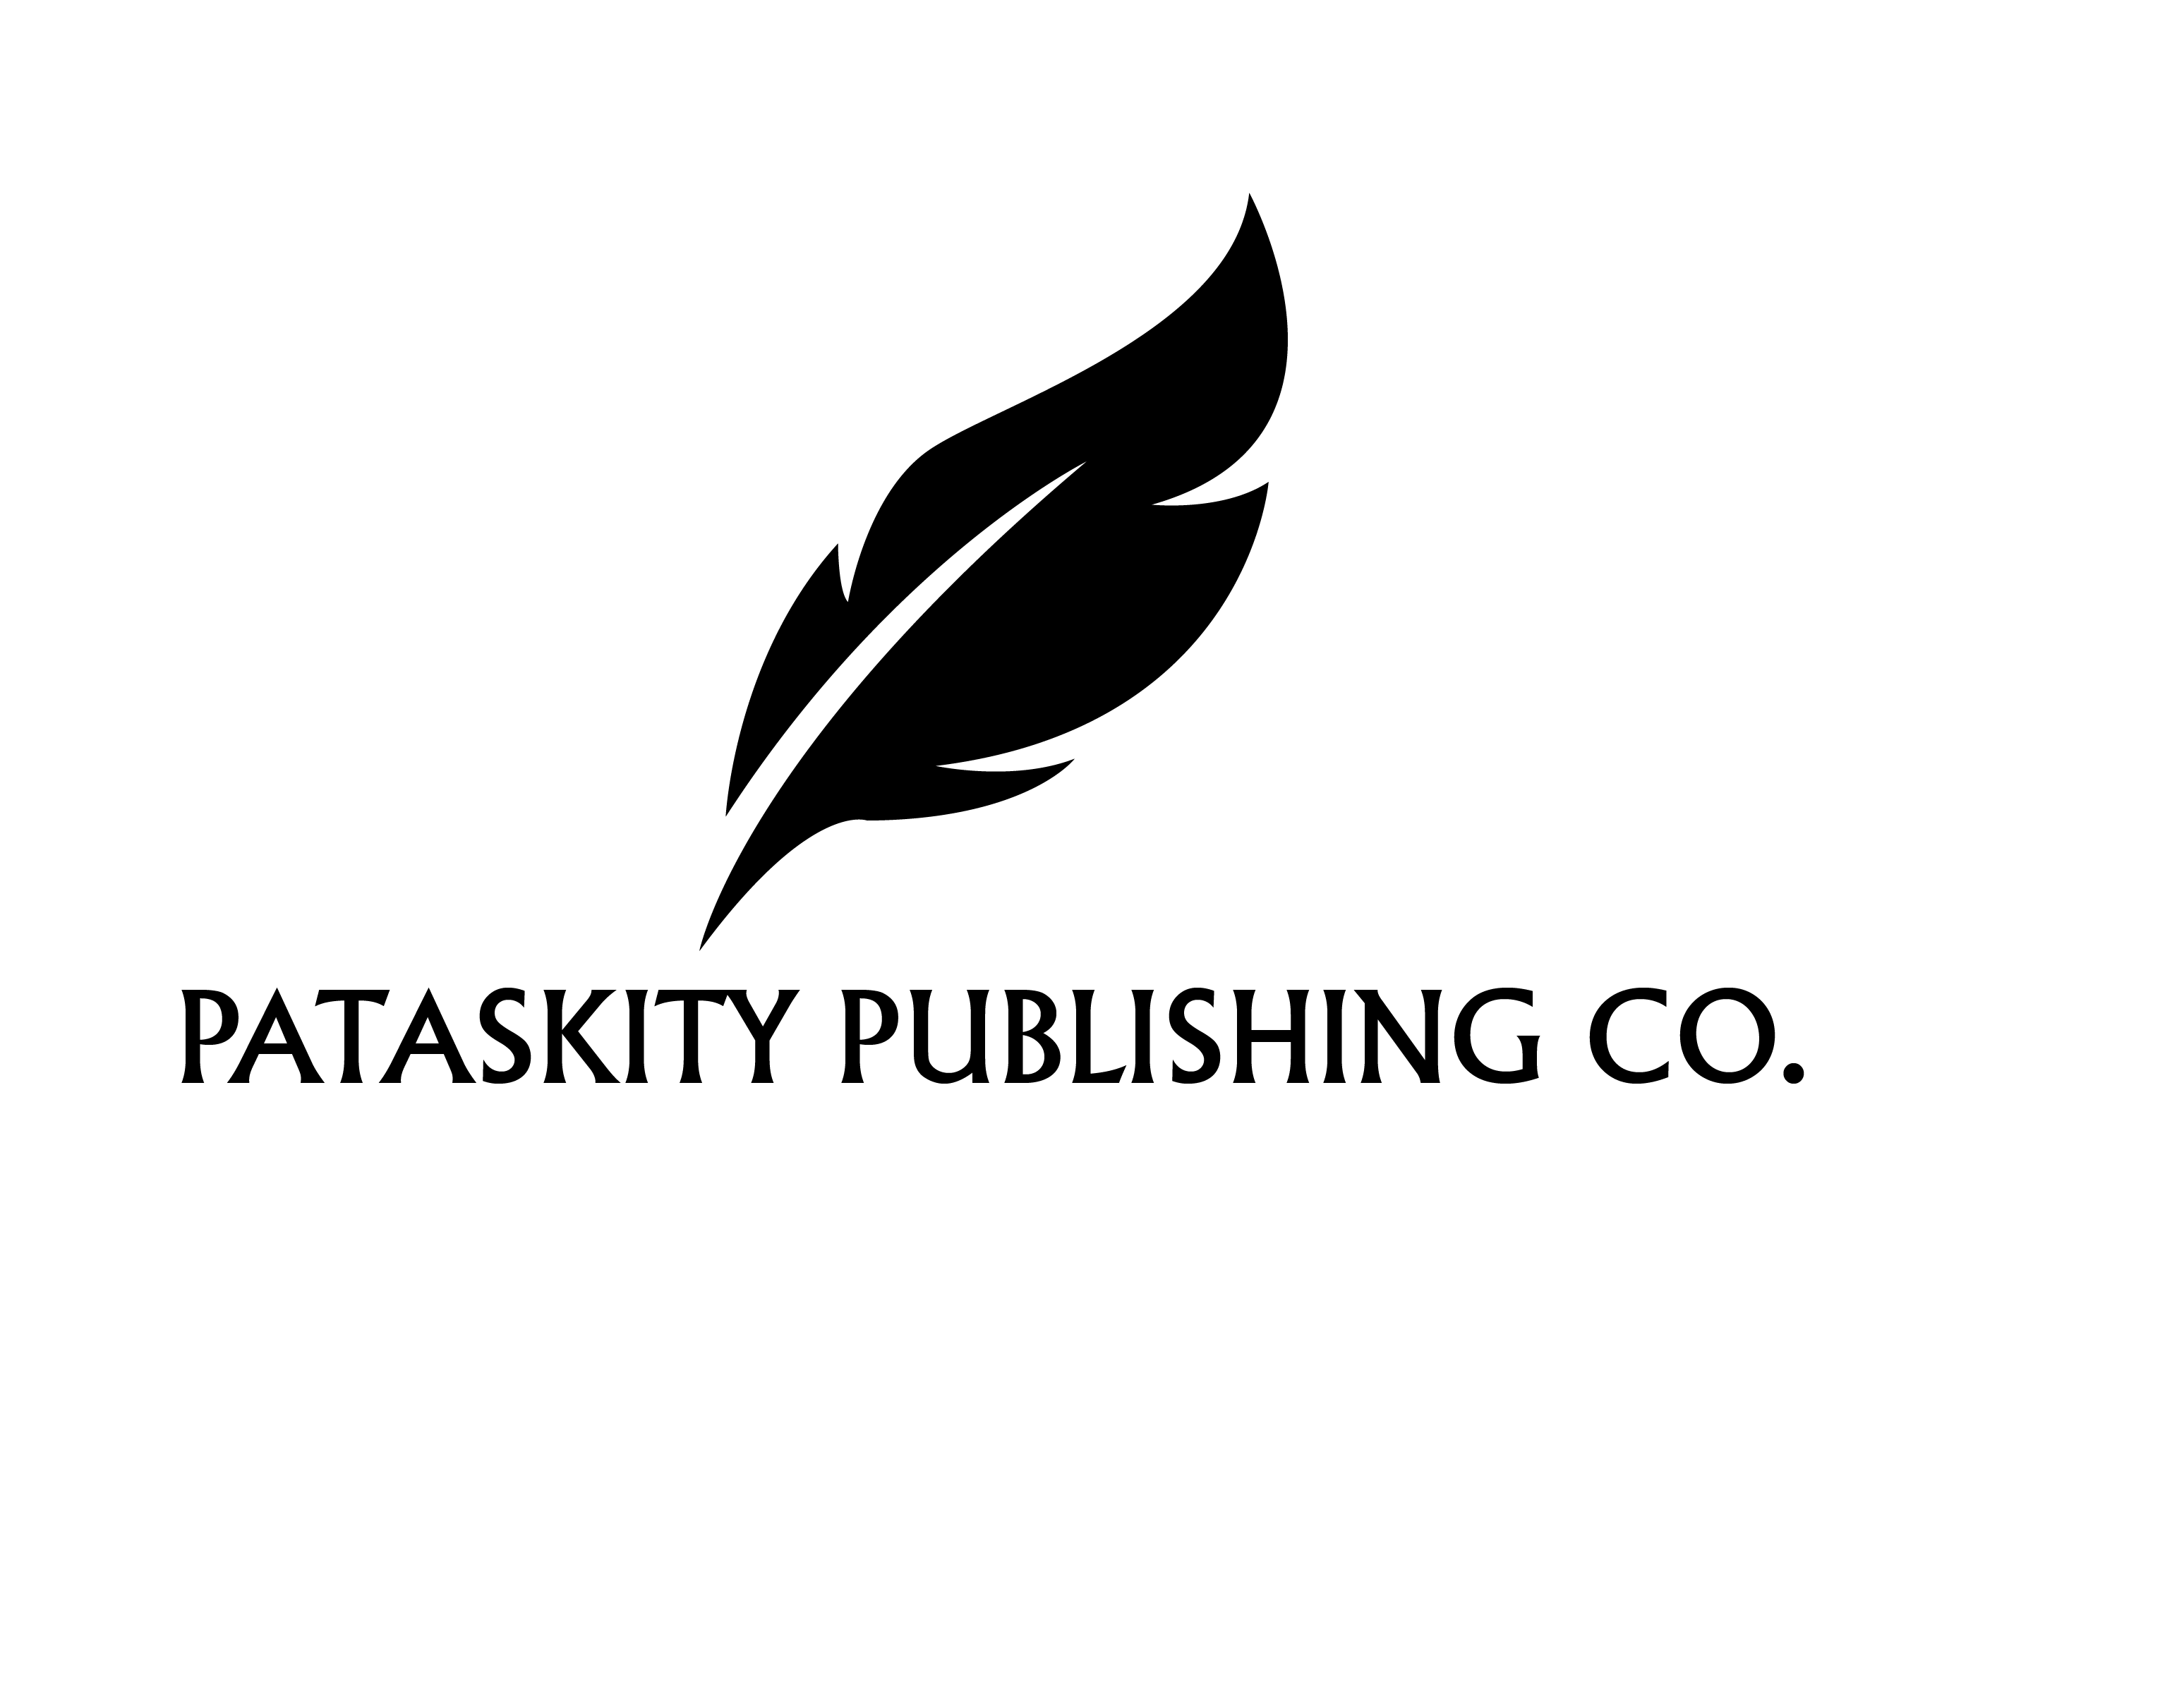  Pataskity Publishing Co.